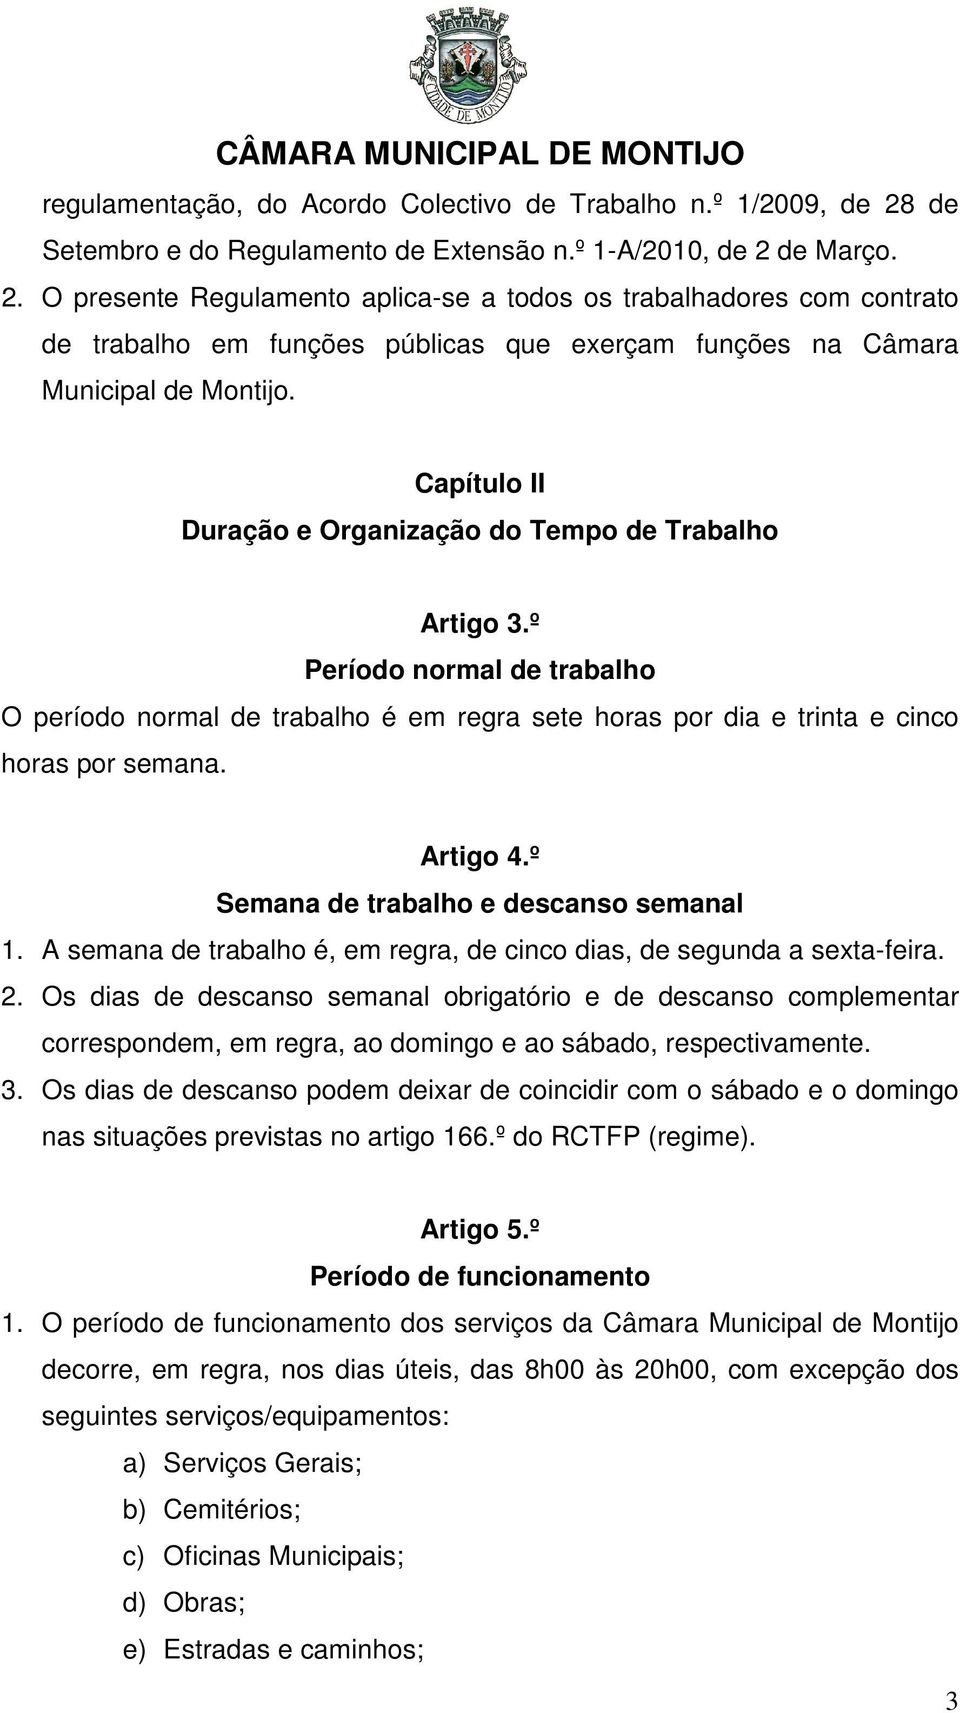 de Março. 2. O presente Regulamento aplica-se a todos os trabalhadores com contrato de trabalho em funções públicas que exerçam funções na Câmara Municipal de Montijo.